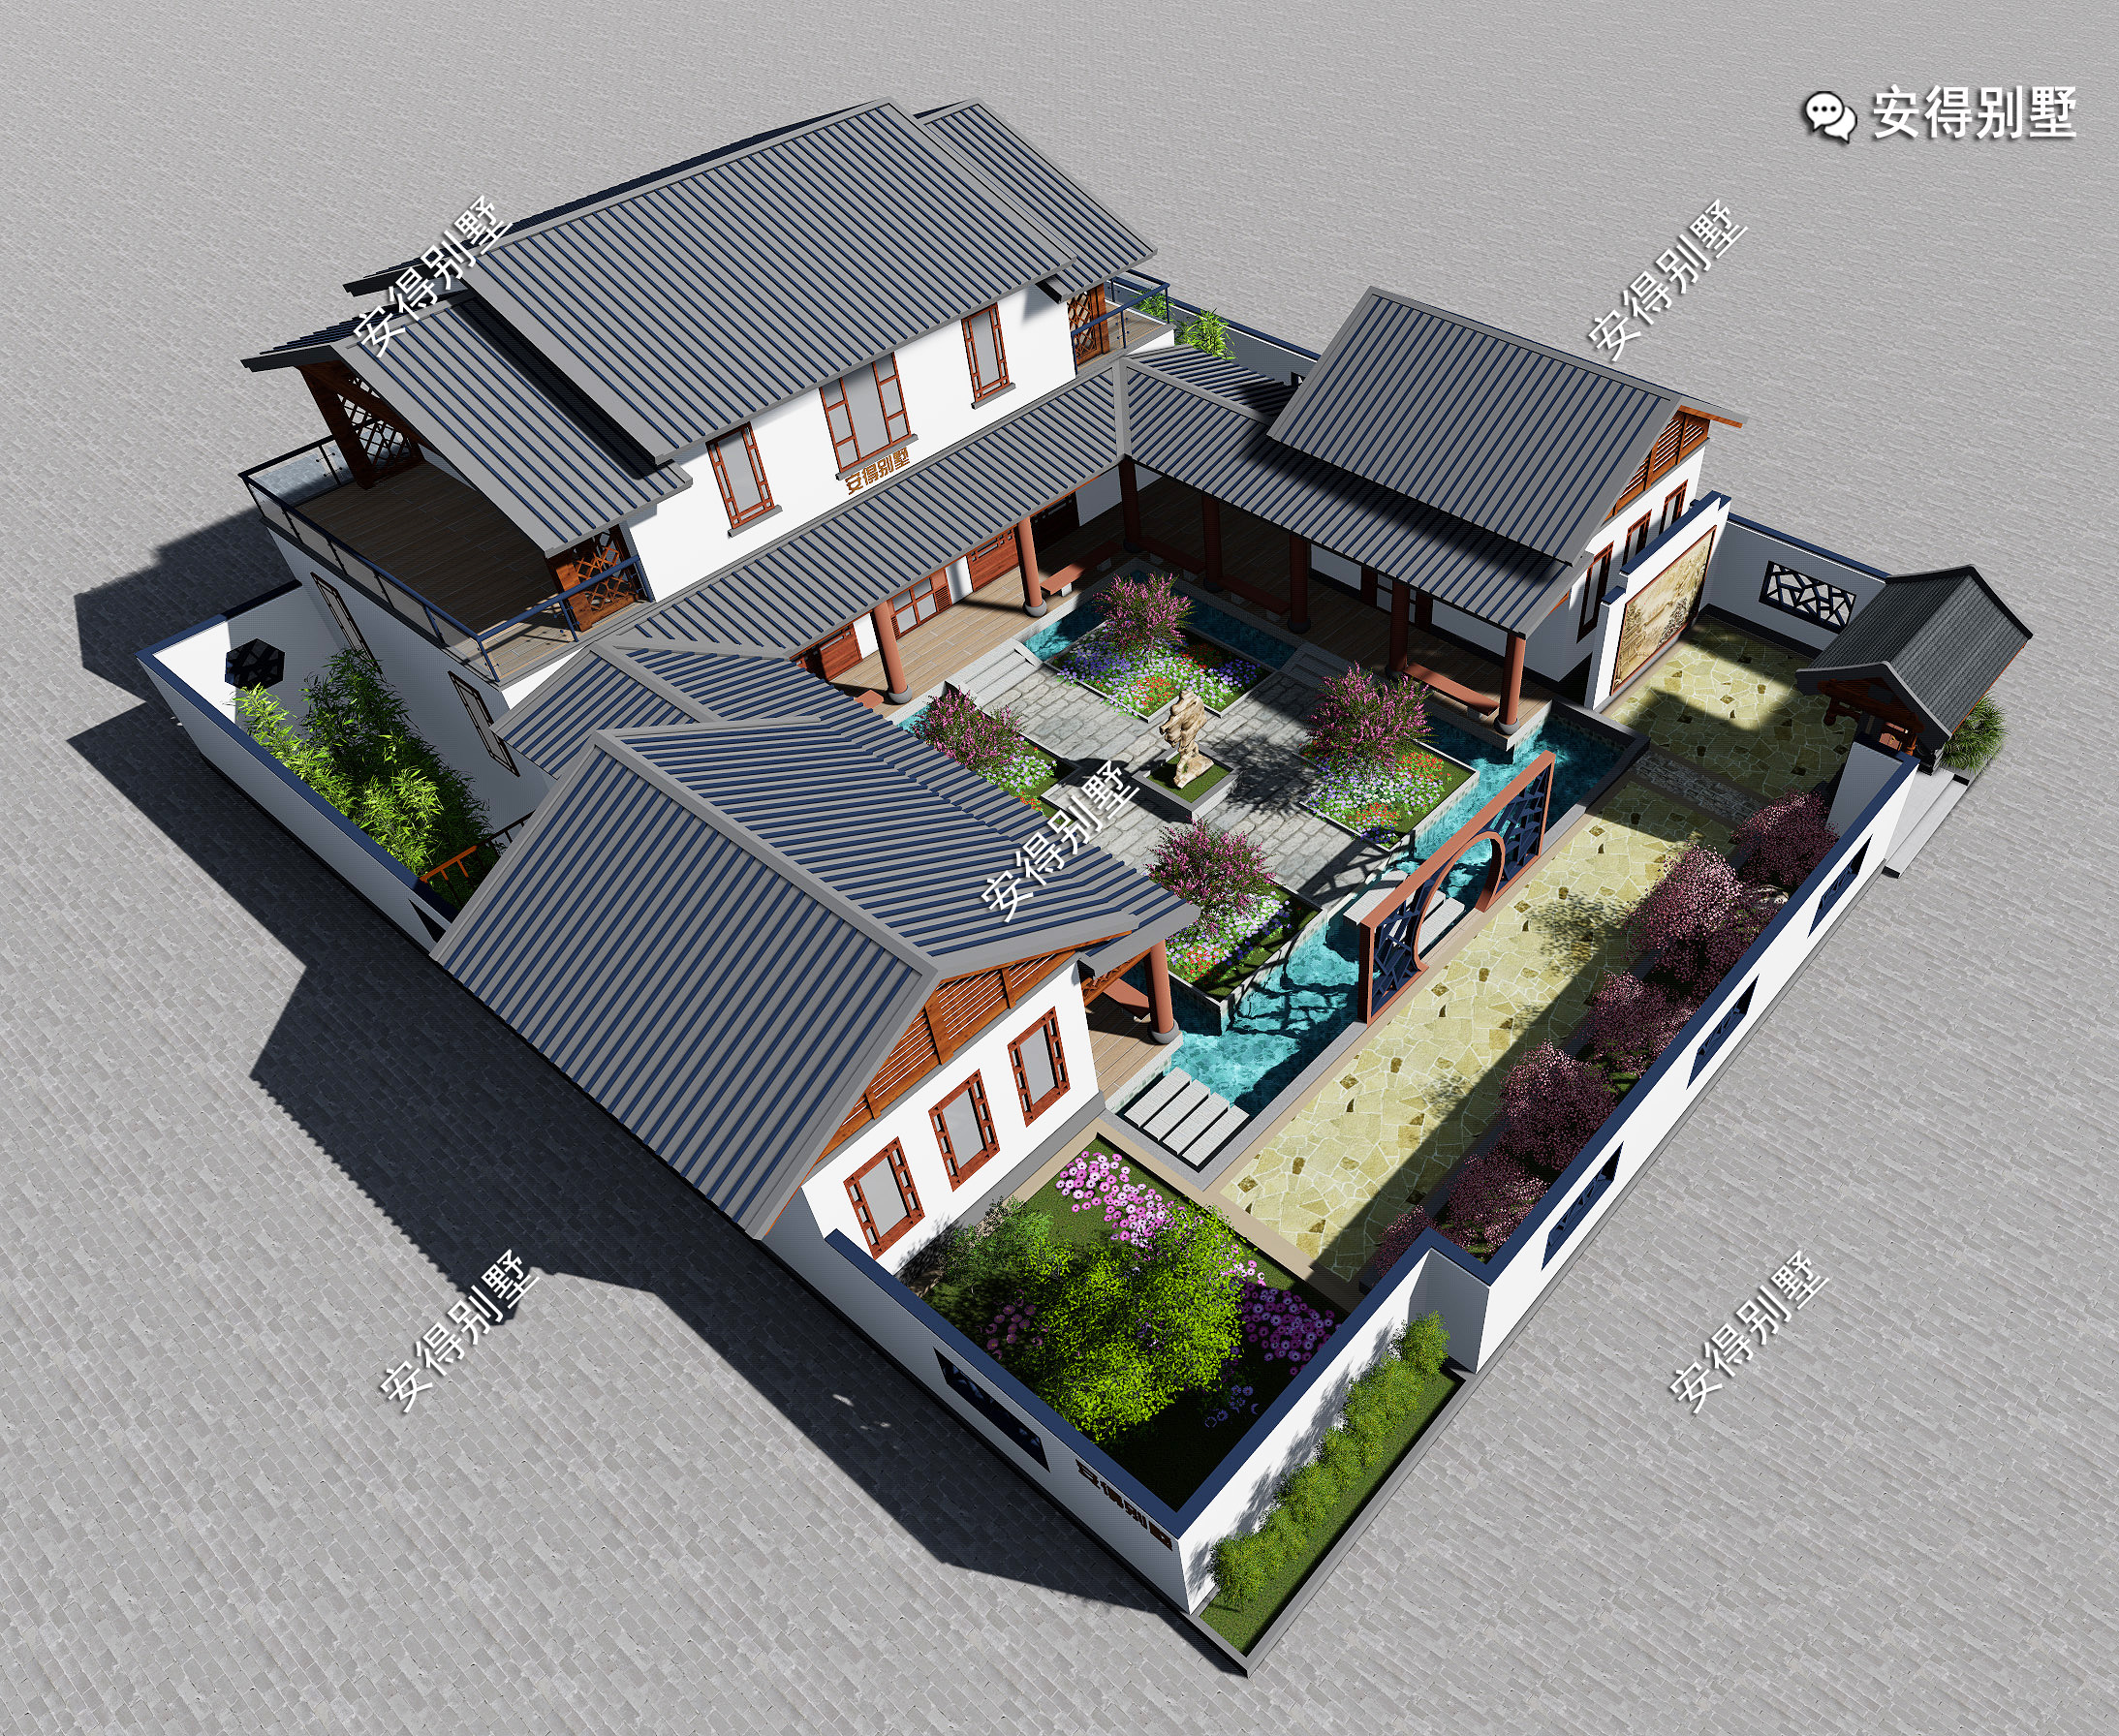 QH2048欧式二层小户型简约农村自建别墅设计图欧式小别墅设计图纸自建房 - 青禾乡墅科技